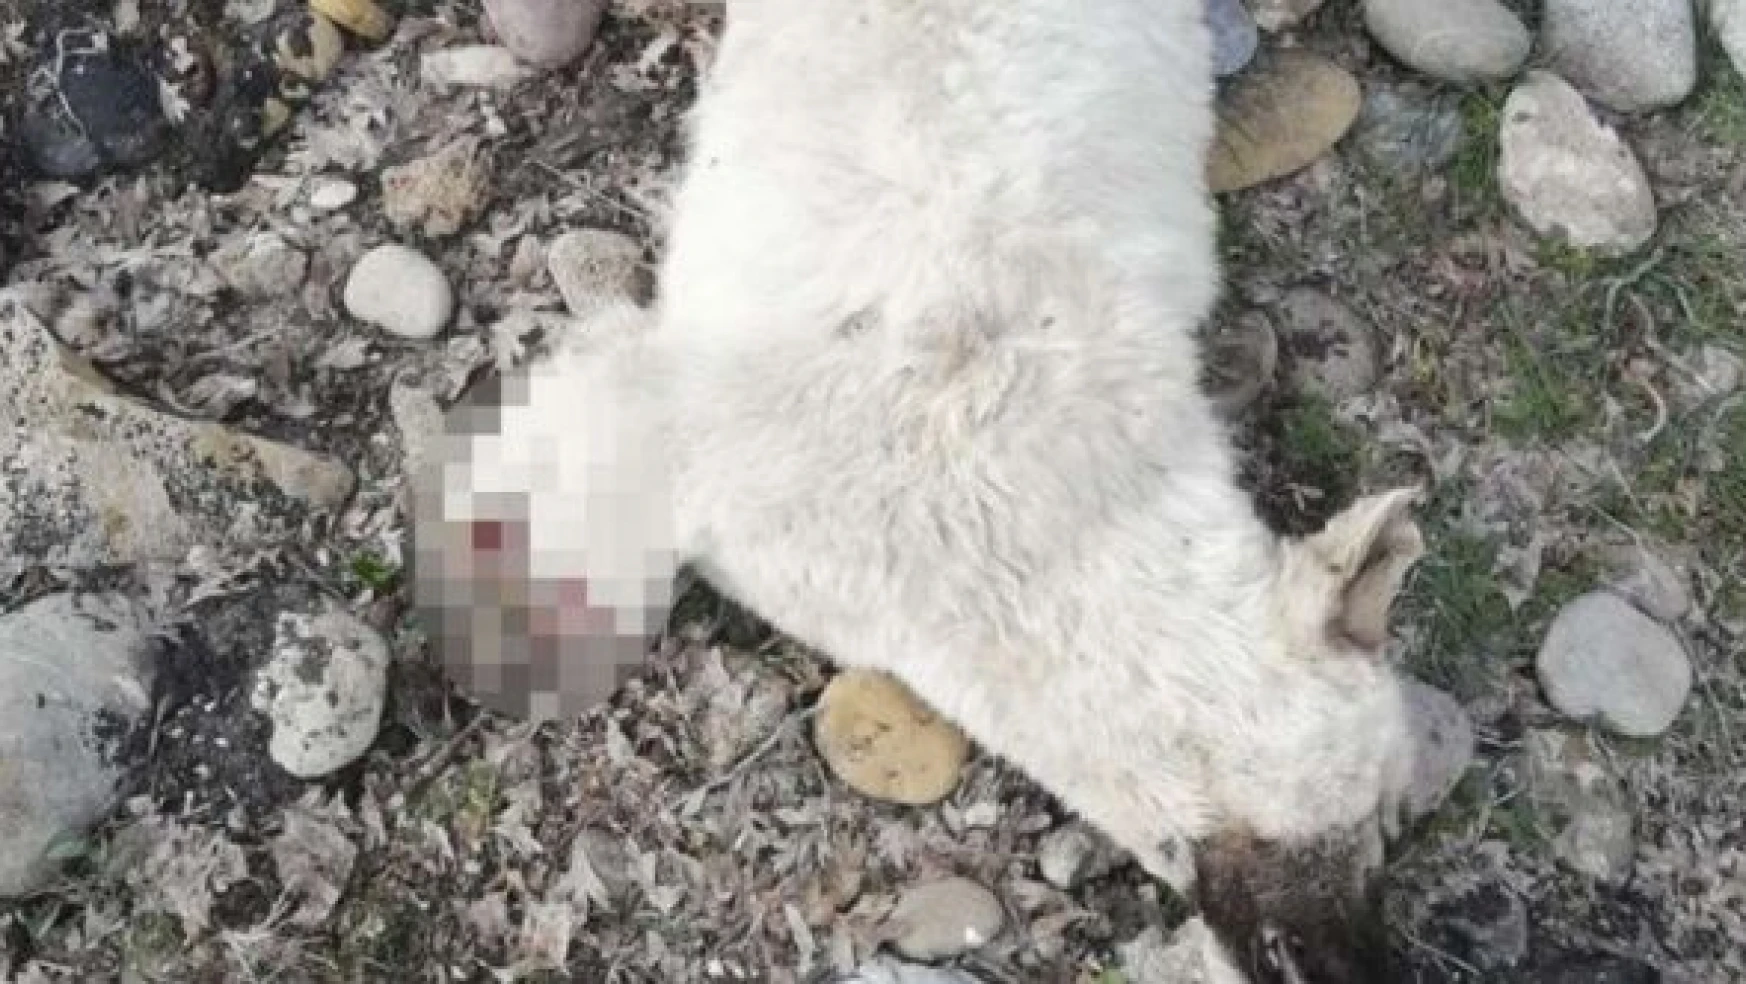 Tunceli'de köpeği öldürüp bacaklarını kestiler!